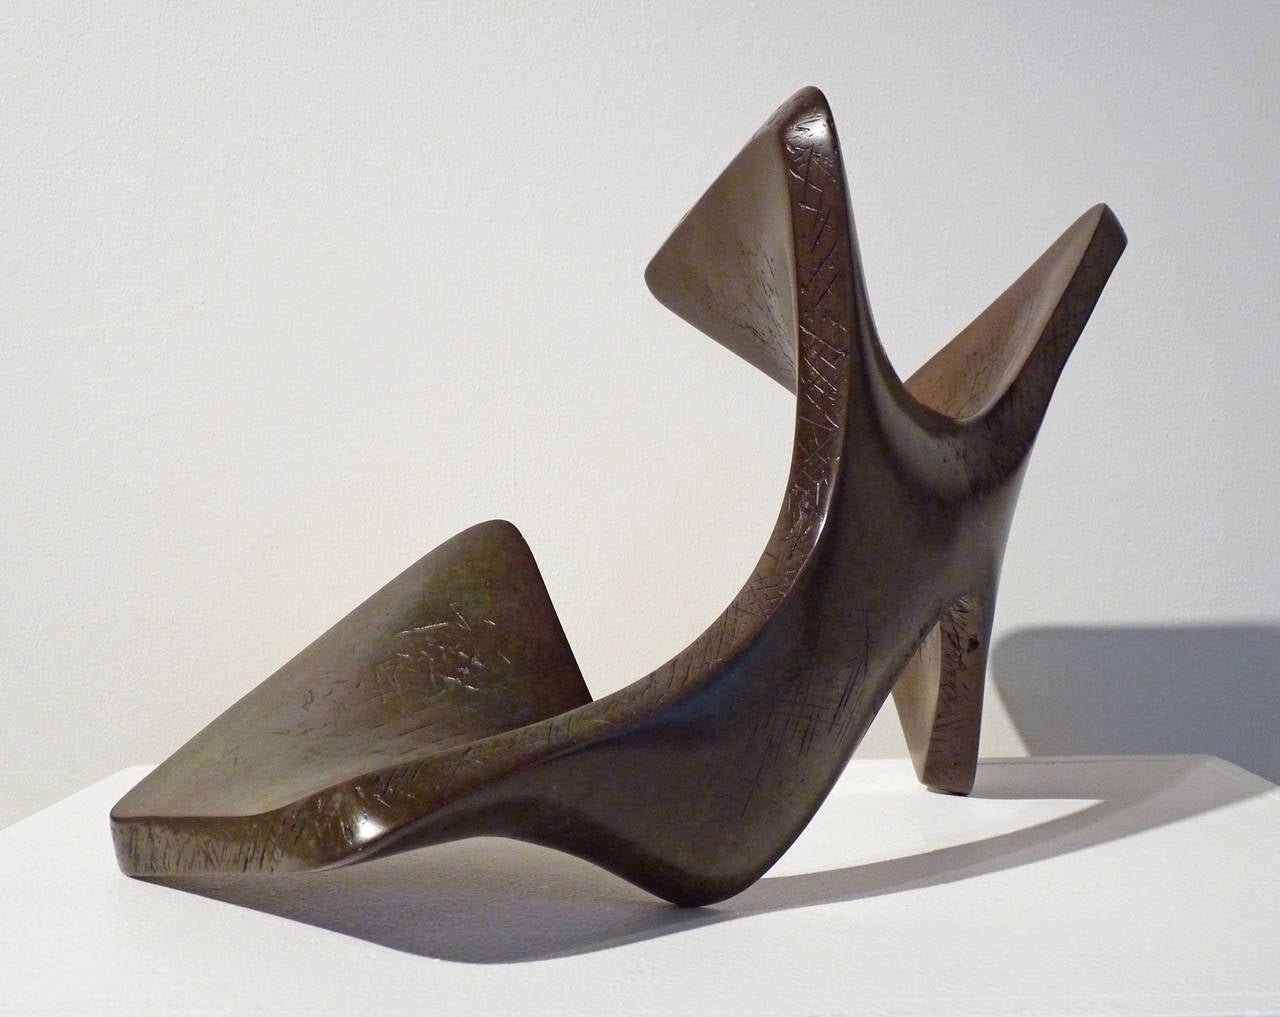 Situ - Contemporary Sculpture by Richard Erdman